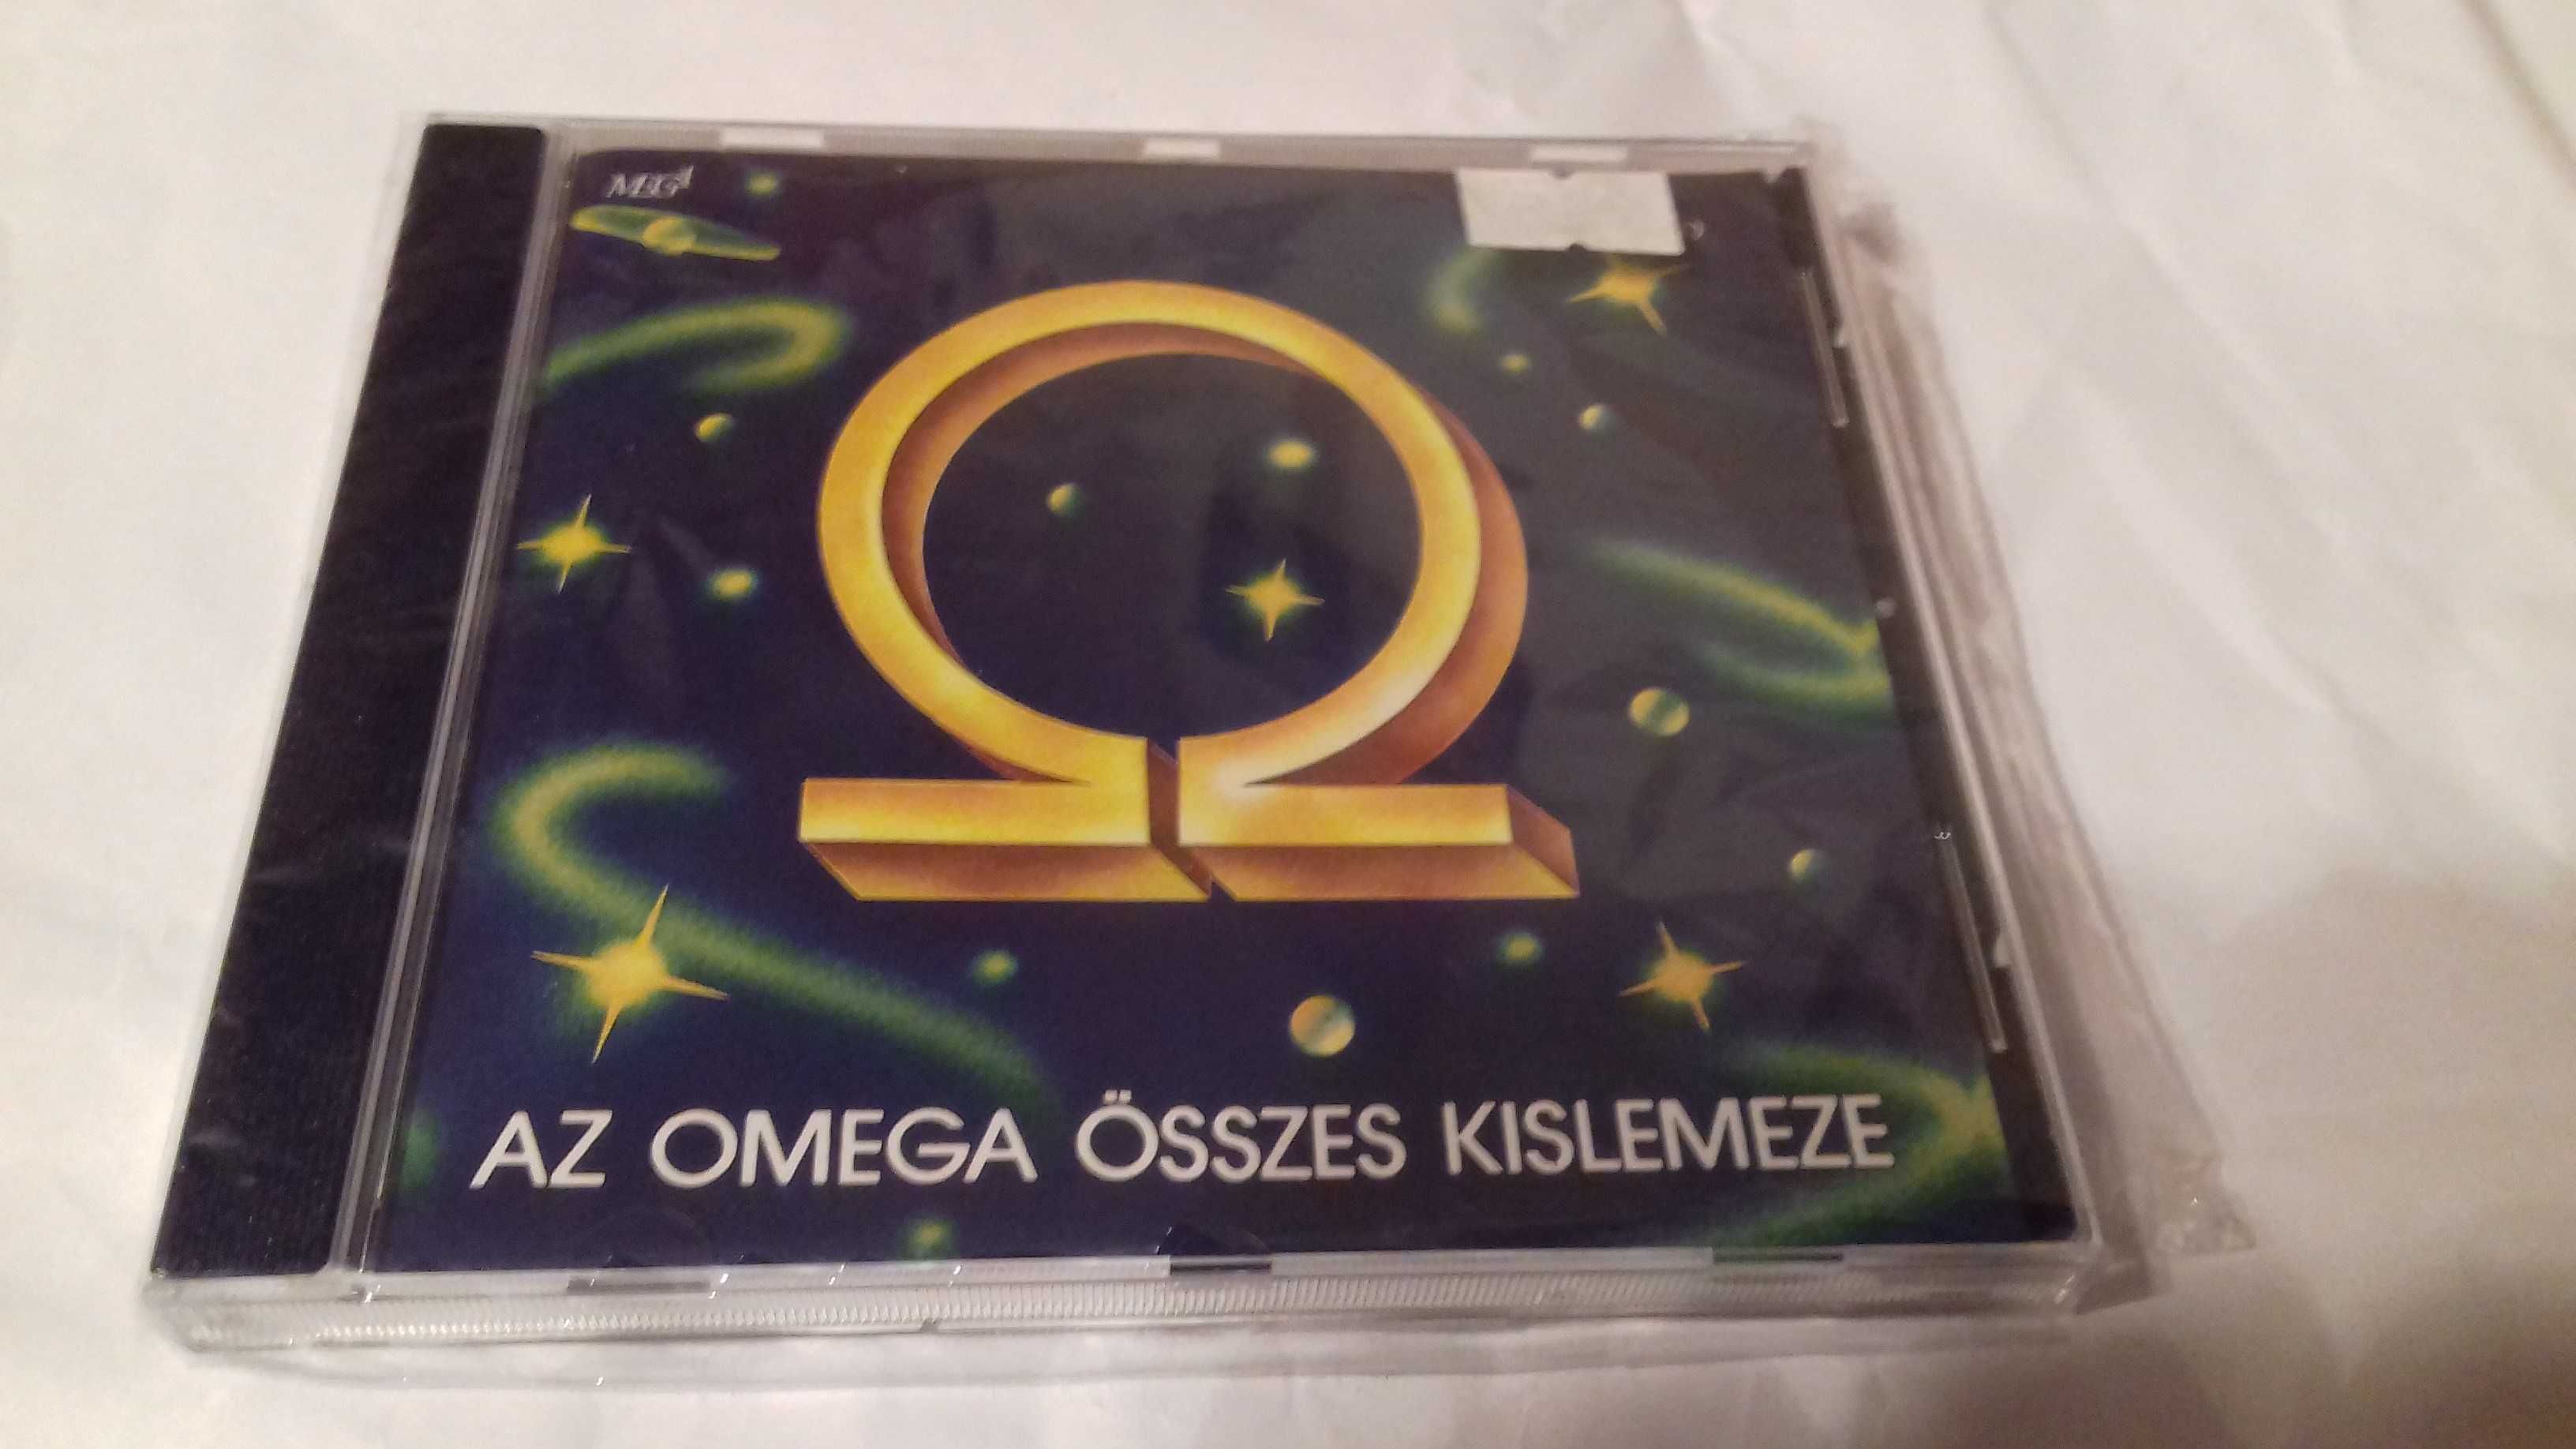 Omega Az Omega Osszes Kislemeze 1967-71 MEGA 92/M-068 Hungary CD nowa!